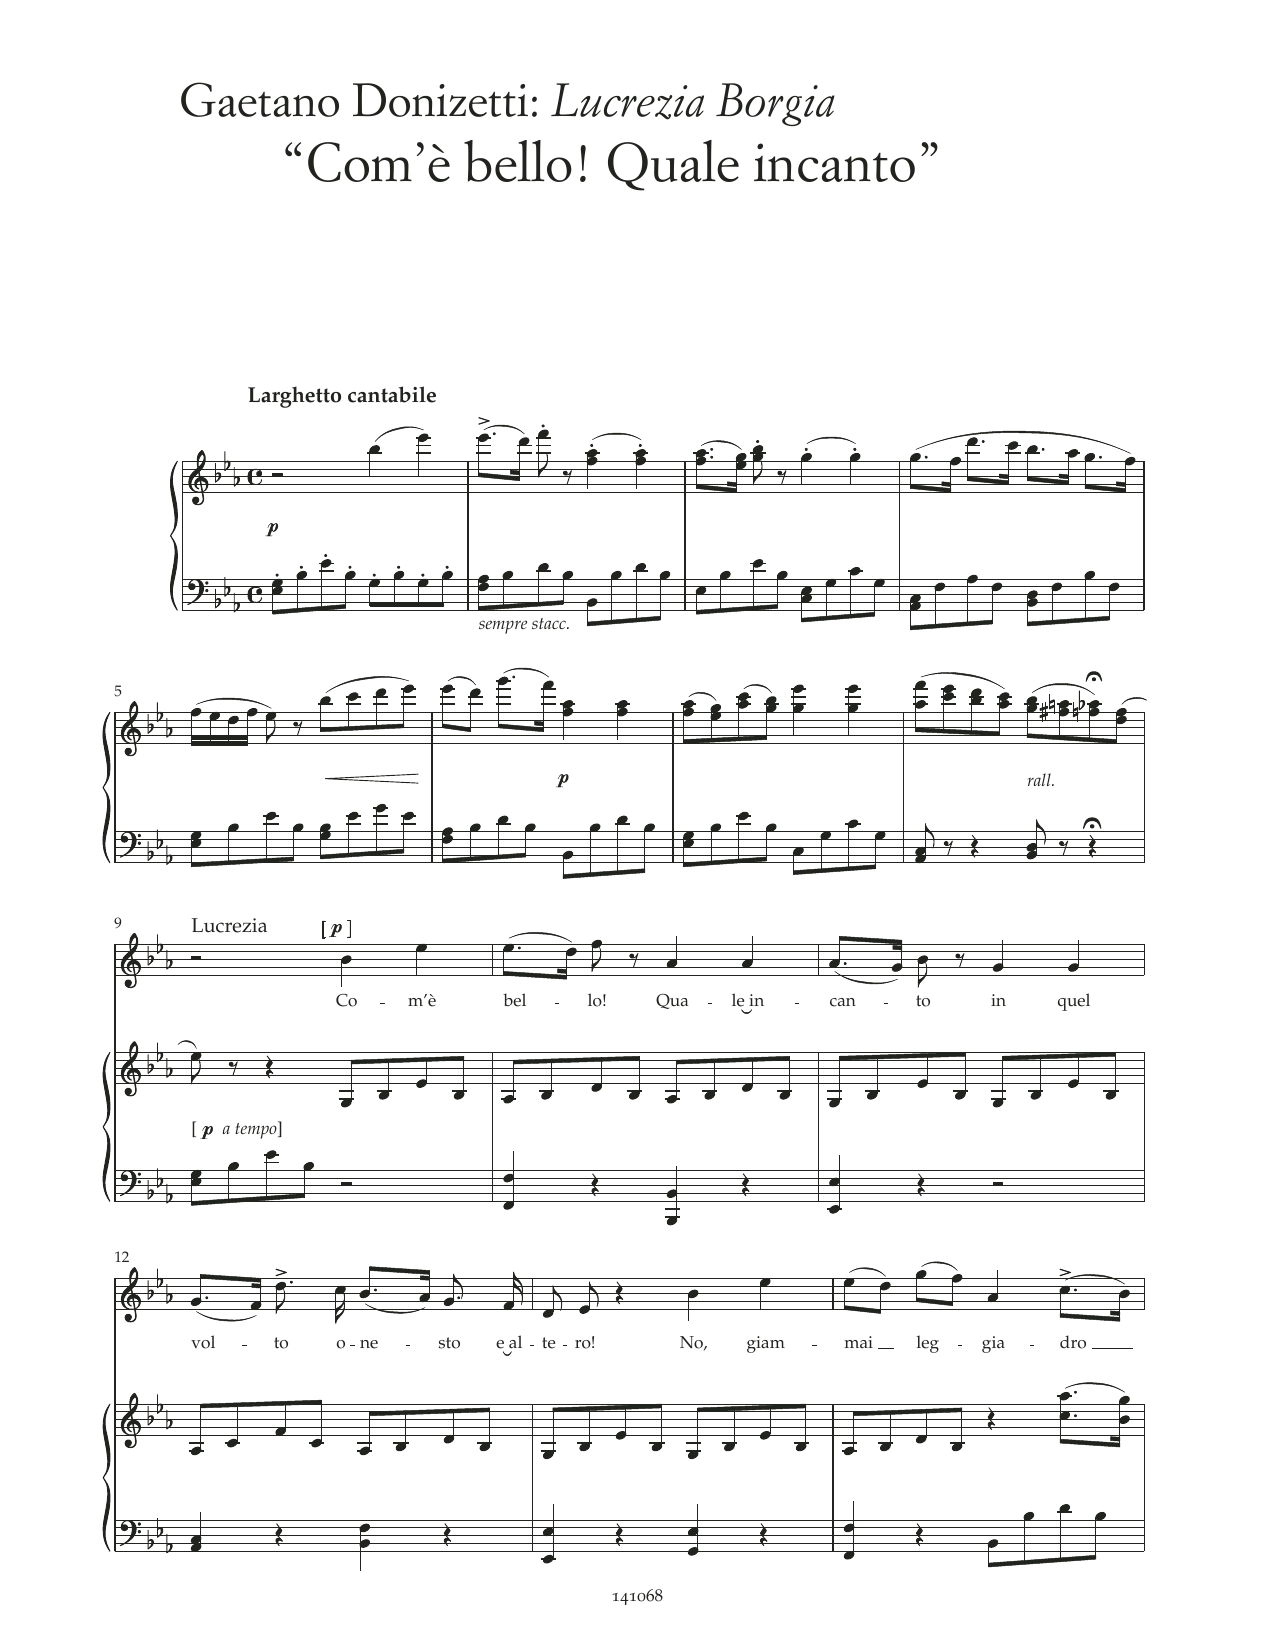 Gaetano Donizetti Com'è bello! Quale incanto (arr. Lucrezia Borgia) Sheet Music Notes & Chords for Piano & Vocal - Download or Print PDF